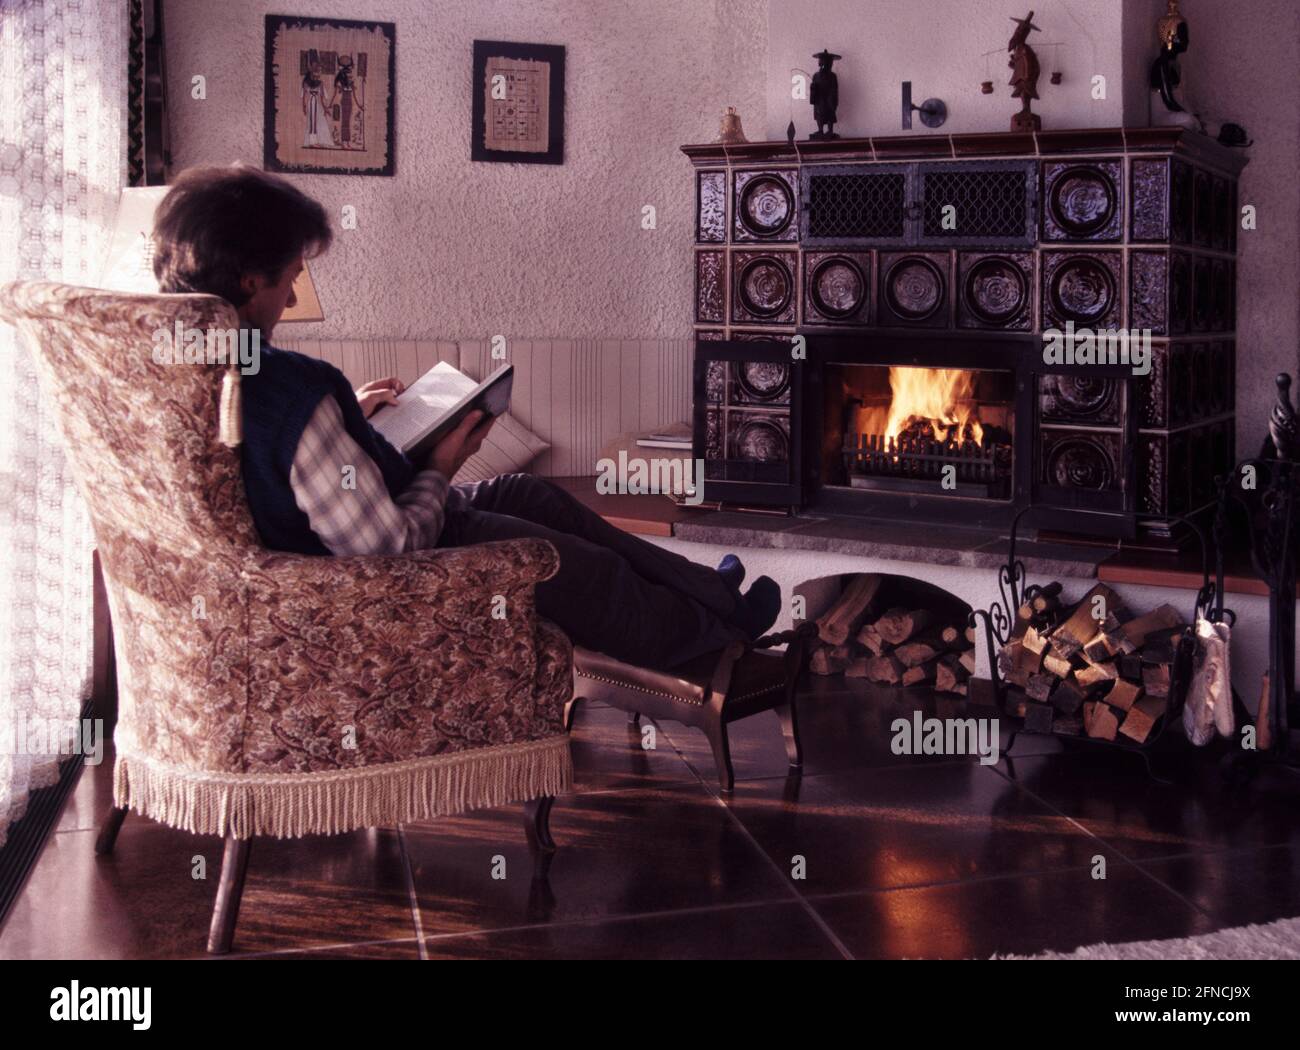 ein Mann liest ein Buch in einem alten Lehnsessel am Kaminfeuer, Sonne scheint mild von links * man relaxed reading a book in front of fireplace Stock Photo